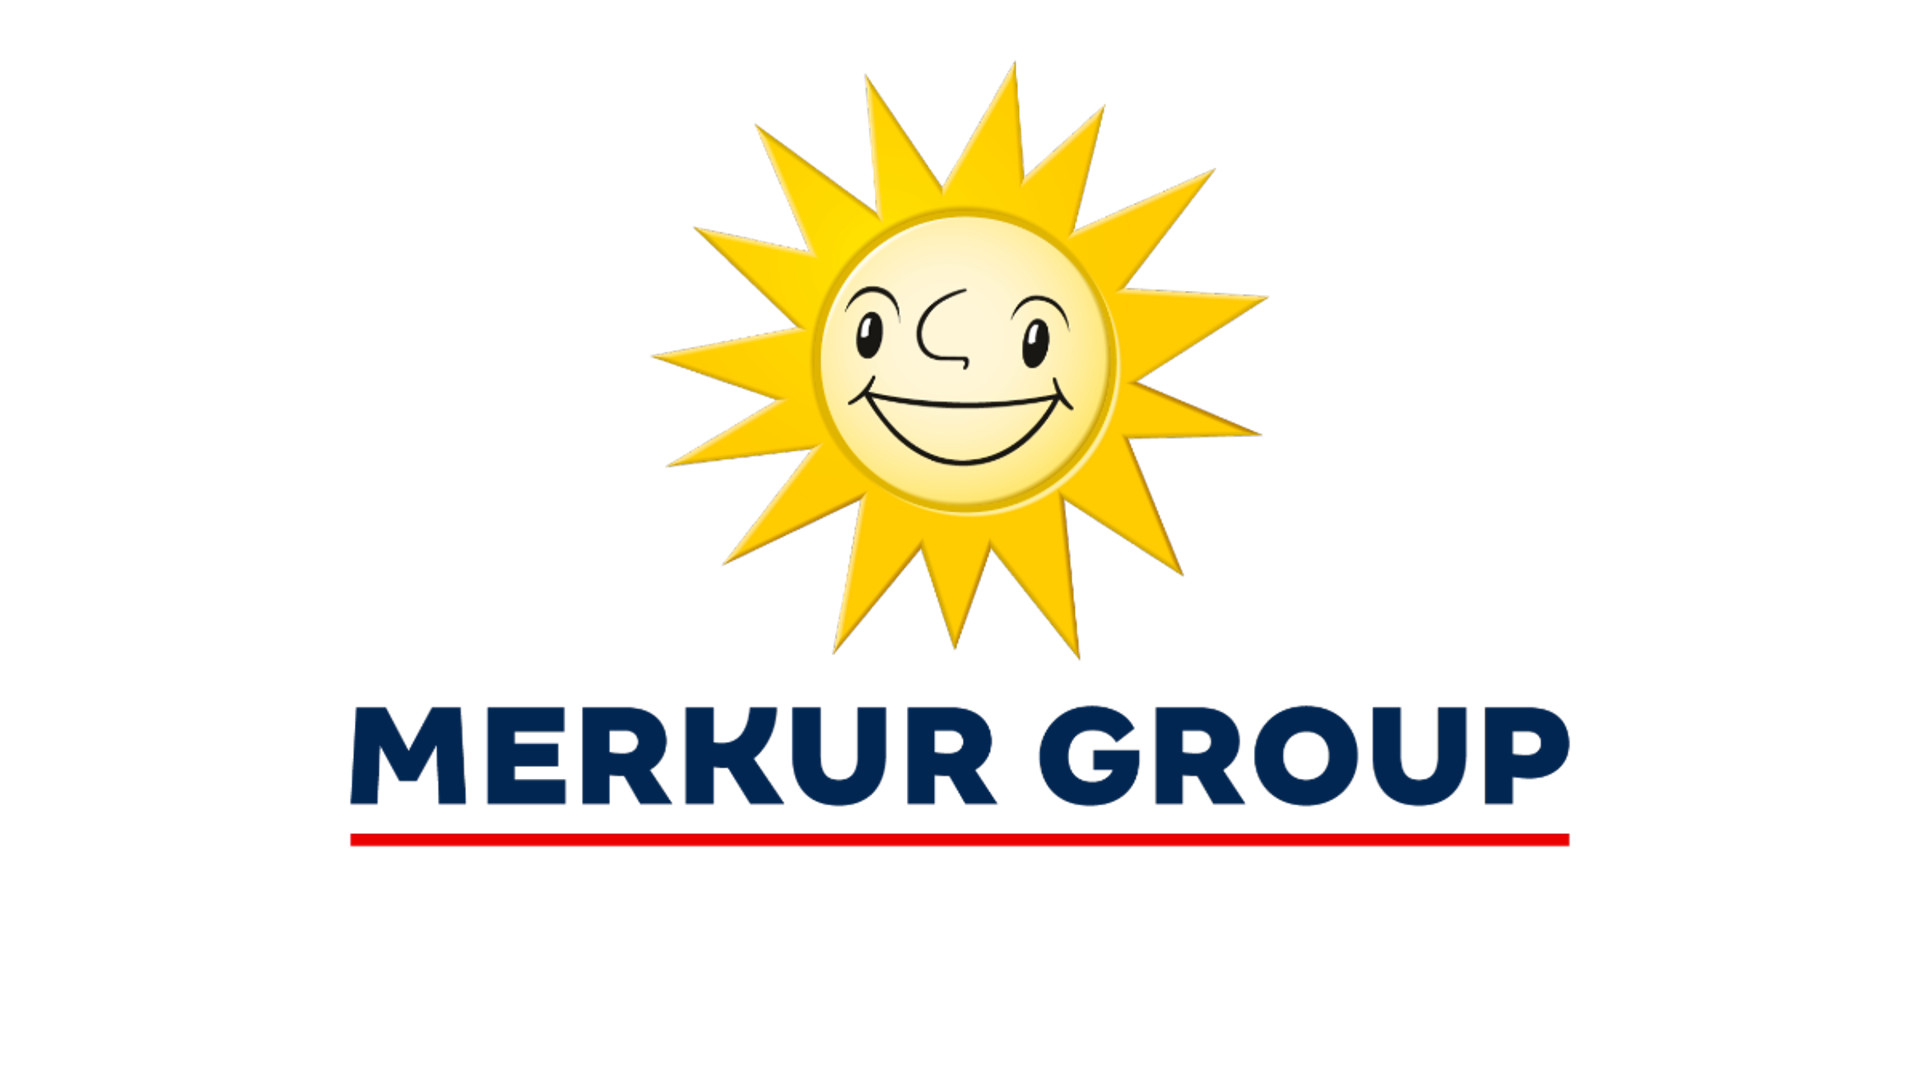 MERKUR Group | MERKUR GAMING